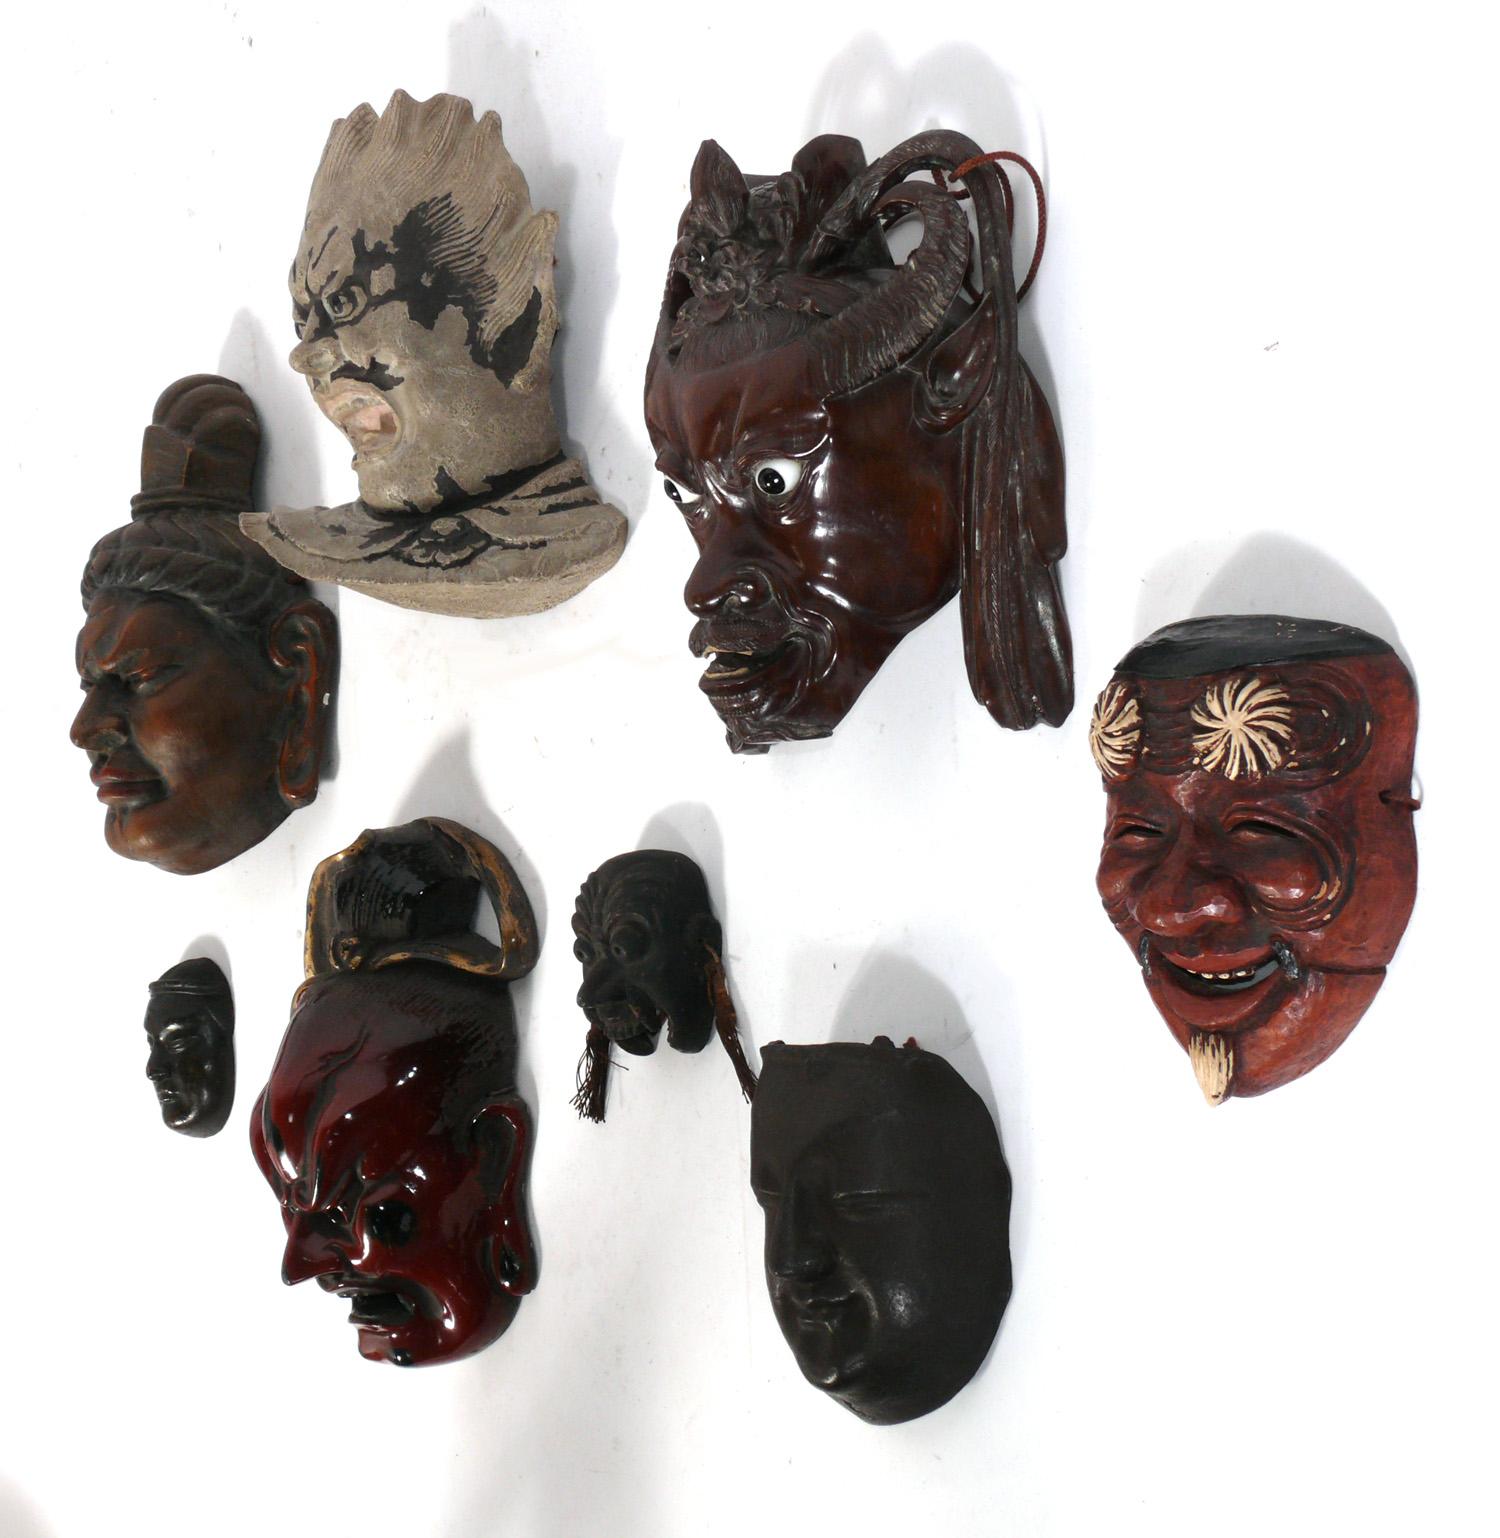 Sammlung von acht japanischen und chinesischen Masken, ca. 1950er Jahre oder früher. Sie wurden kürzlich aus dem Nachlass eines Japaners in Manhattan erworben, der in den 1940er bis 1970er Jahren nach Asien reiste, um Antiquitäten zu kaufen. Sie